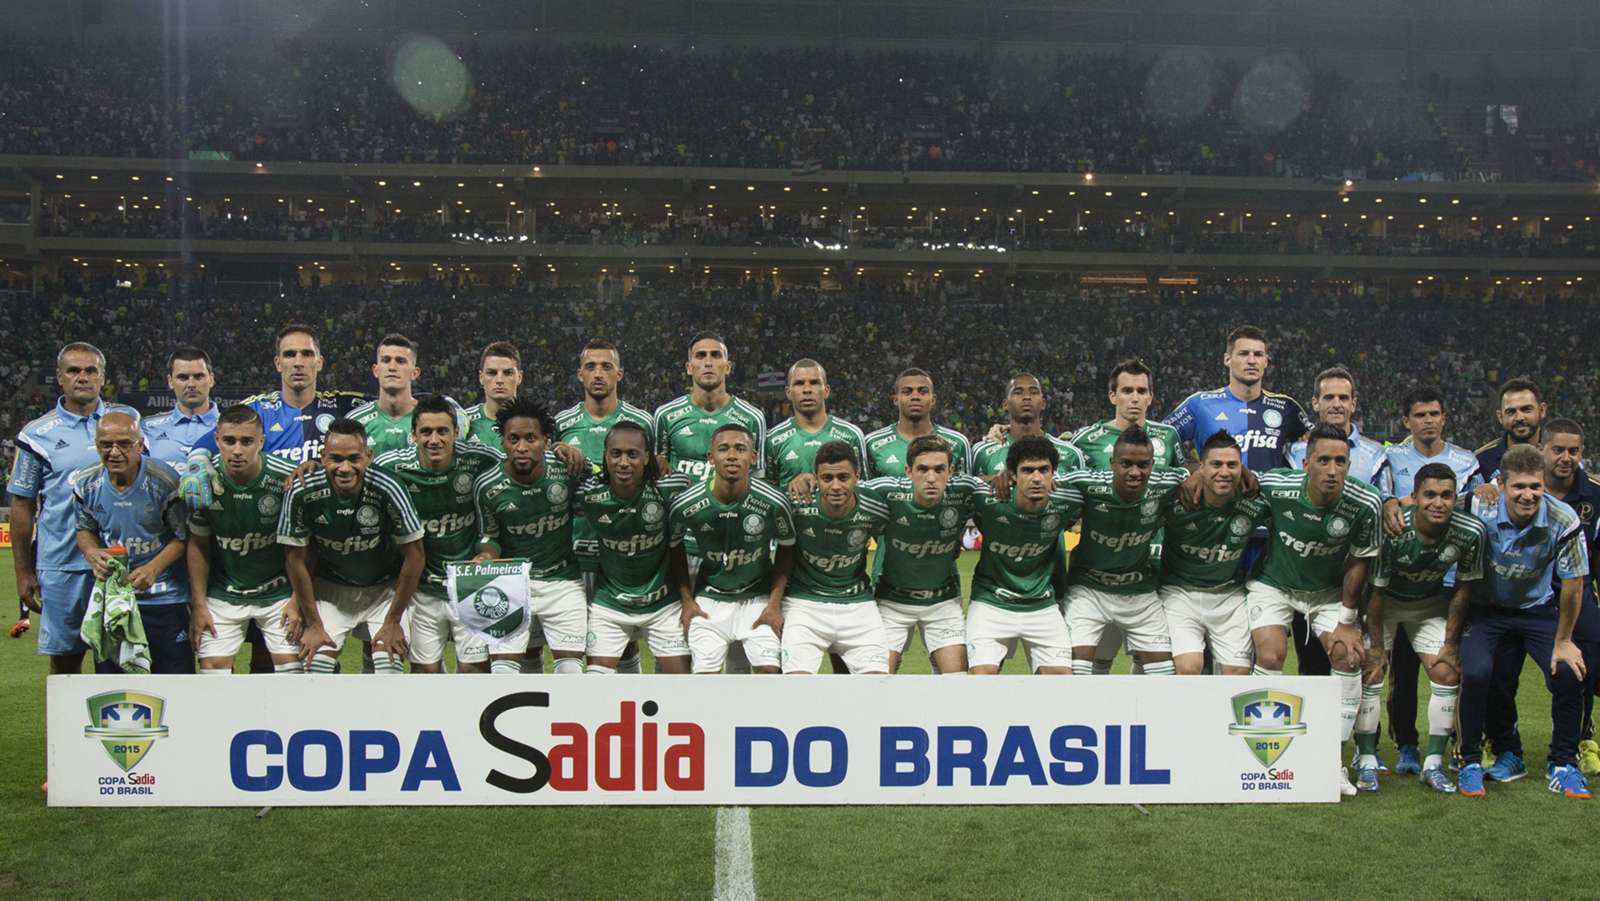 Jogo de ida da final de 2015: Santos 1 x 0 Palmeiras - Na volta, o Palmeiras venceu por 2 a 1 e foi campeão.